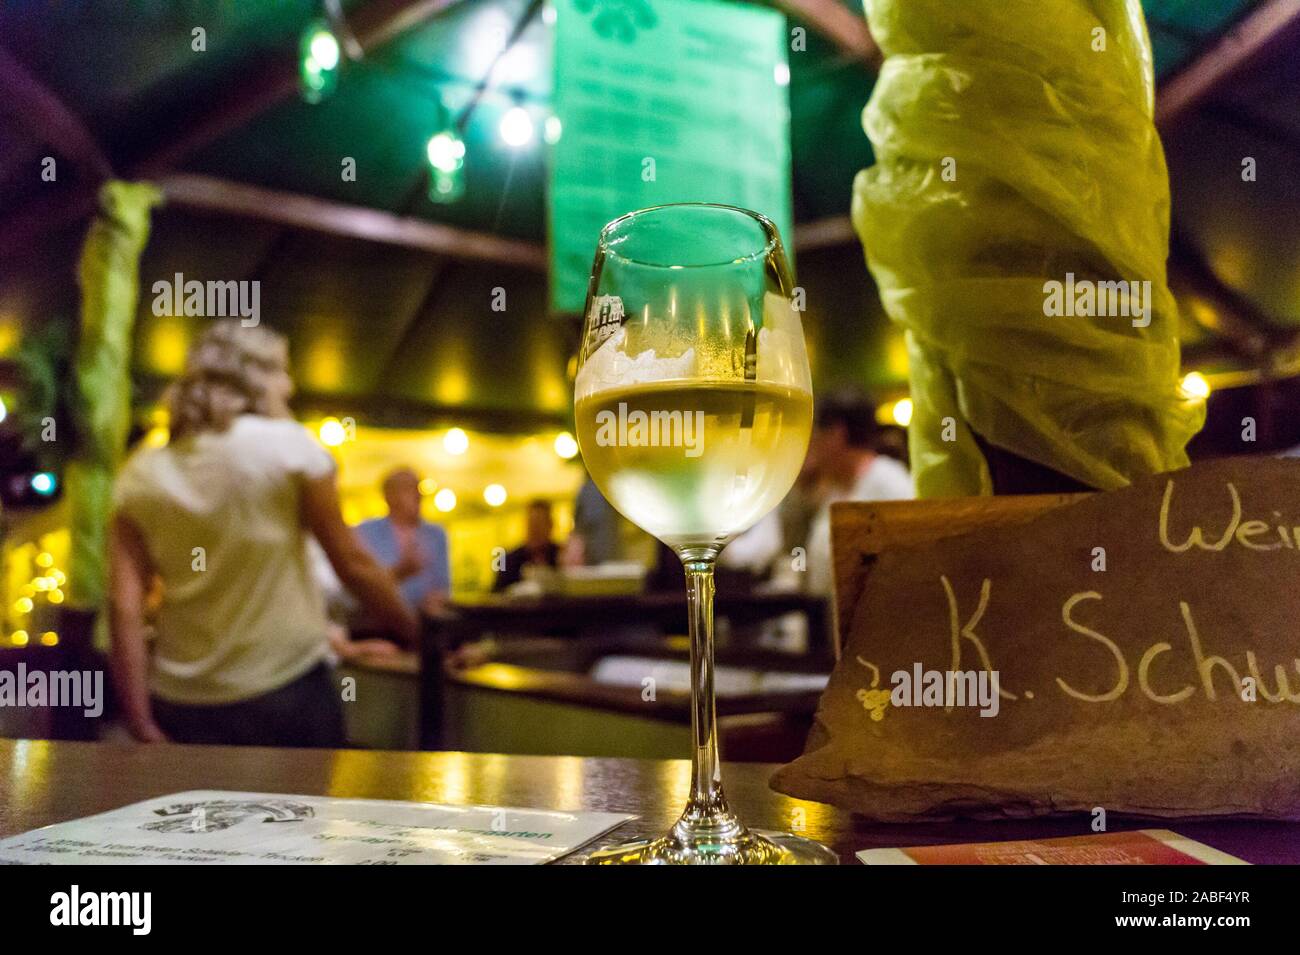 Un bicchiere di vino Riesling da Weingut Karl Schwaab, Ürzig Mosel, Renania-Palatinato, Germania su uno stand presso il festival del vino Foto Stock